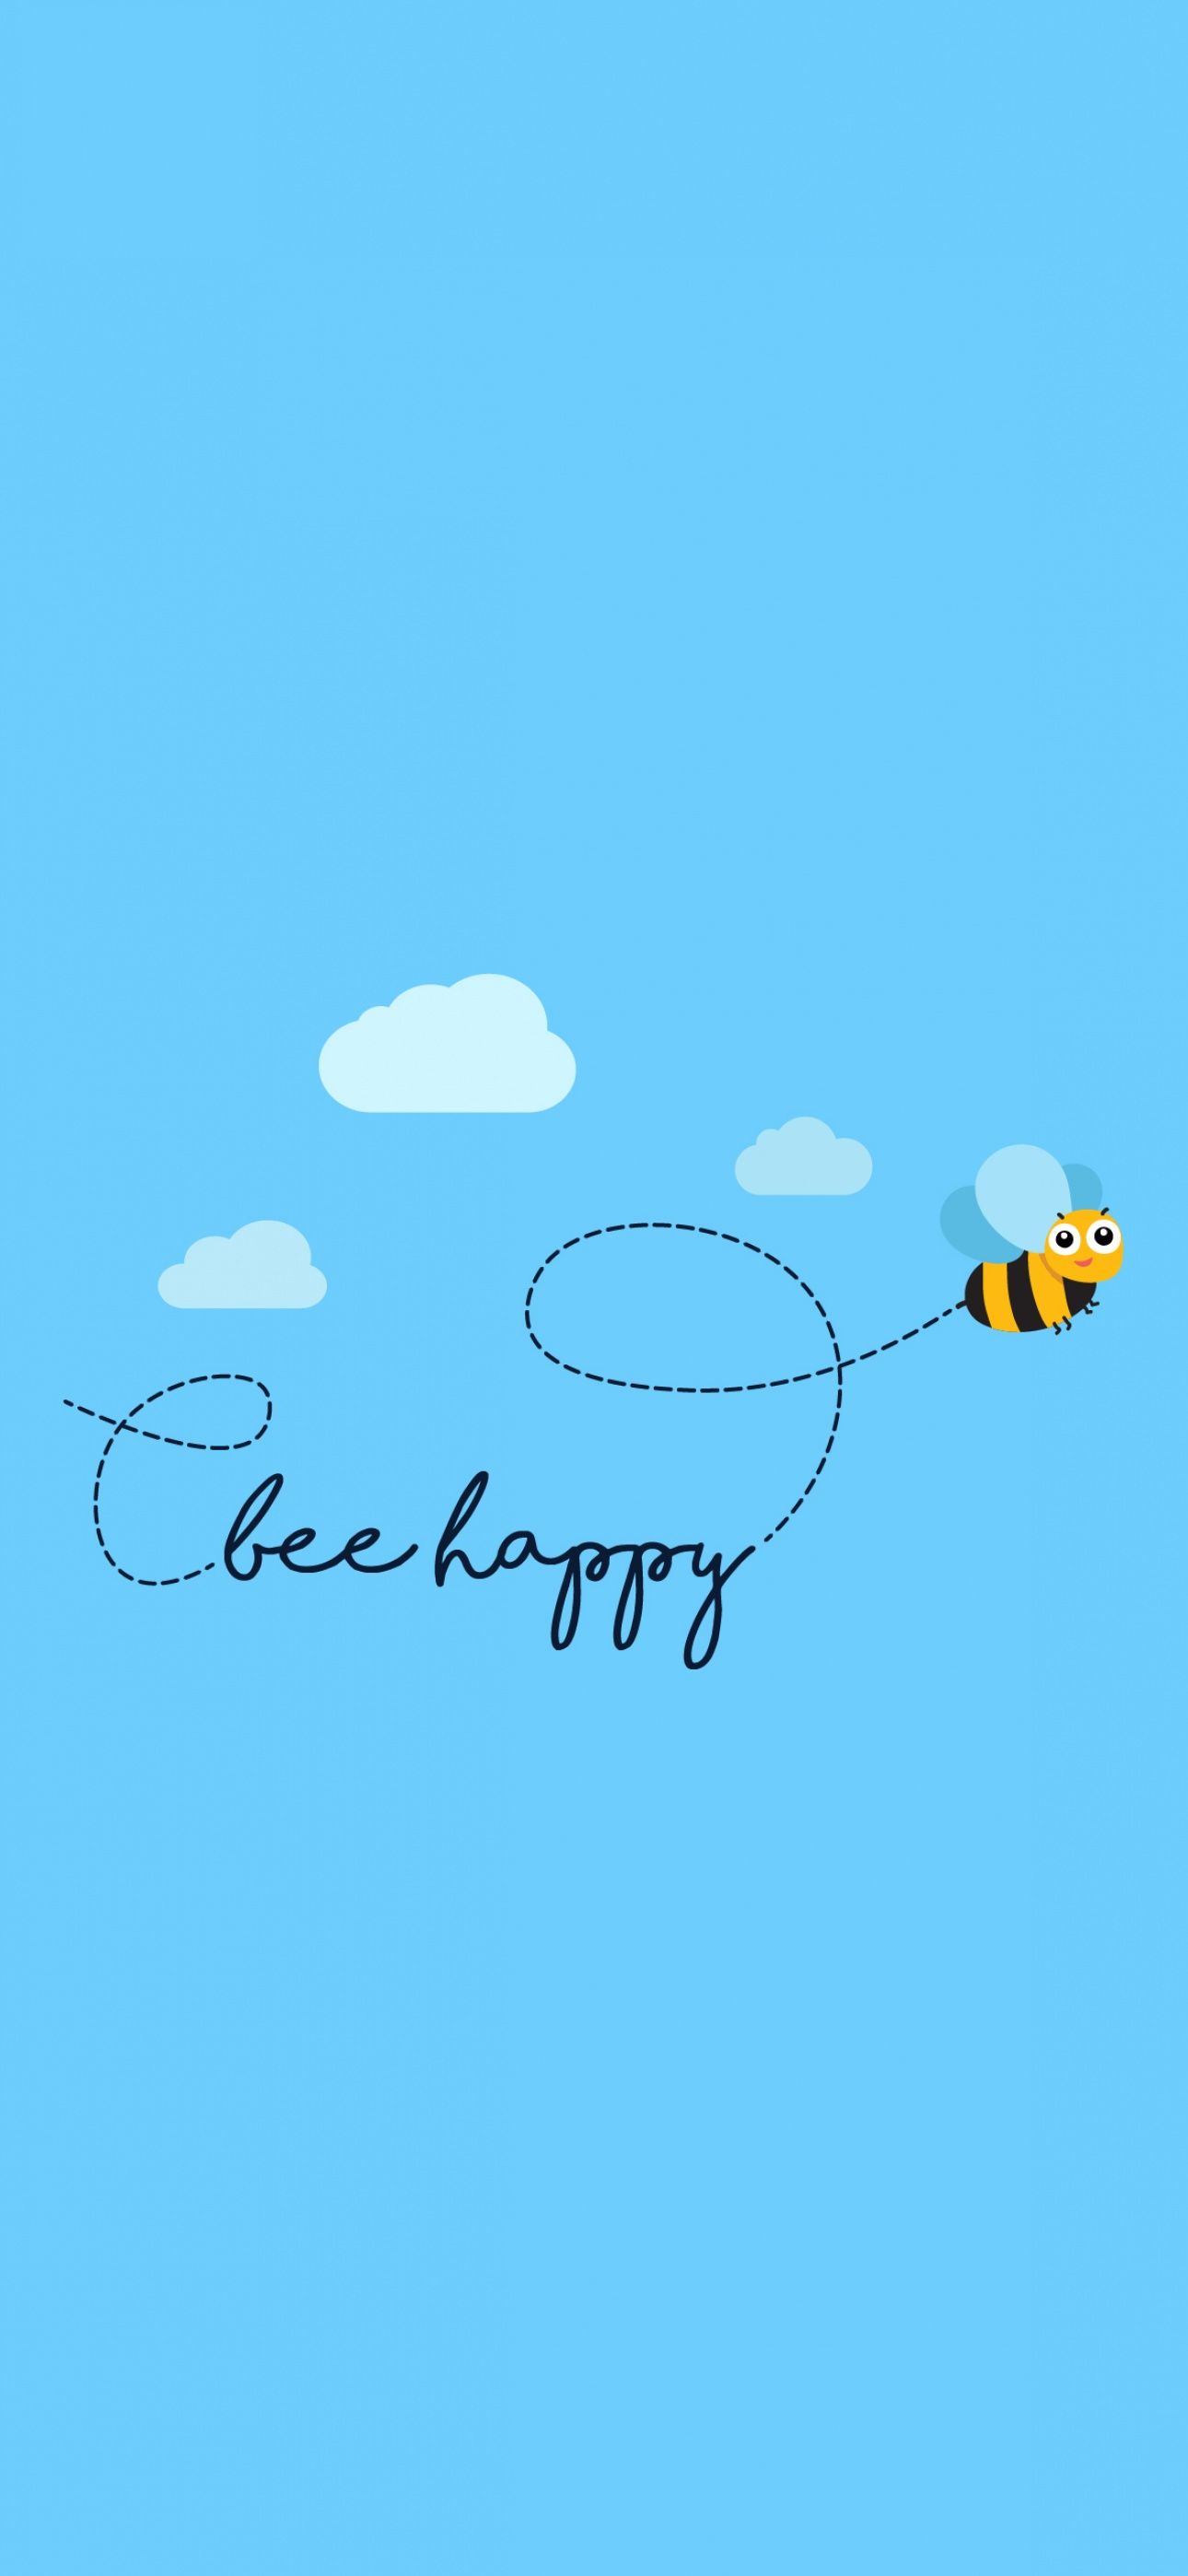 Bee happy Wallpaper 4K, Clear sky, Sky blue, Minimal